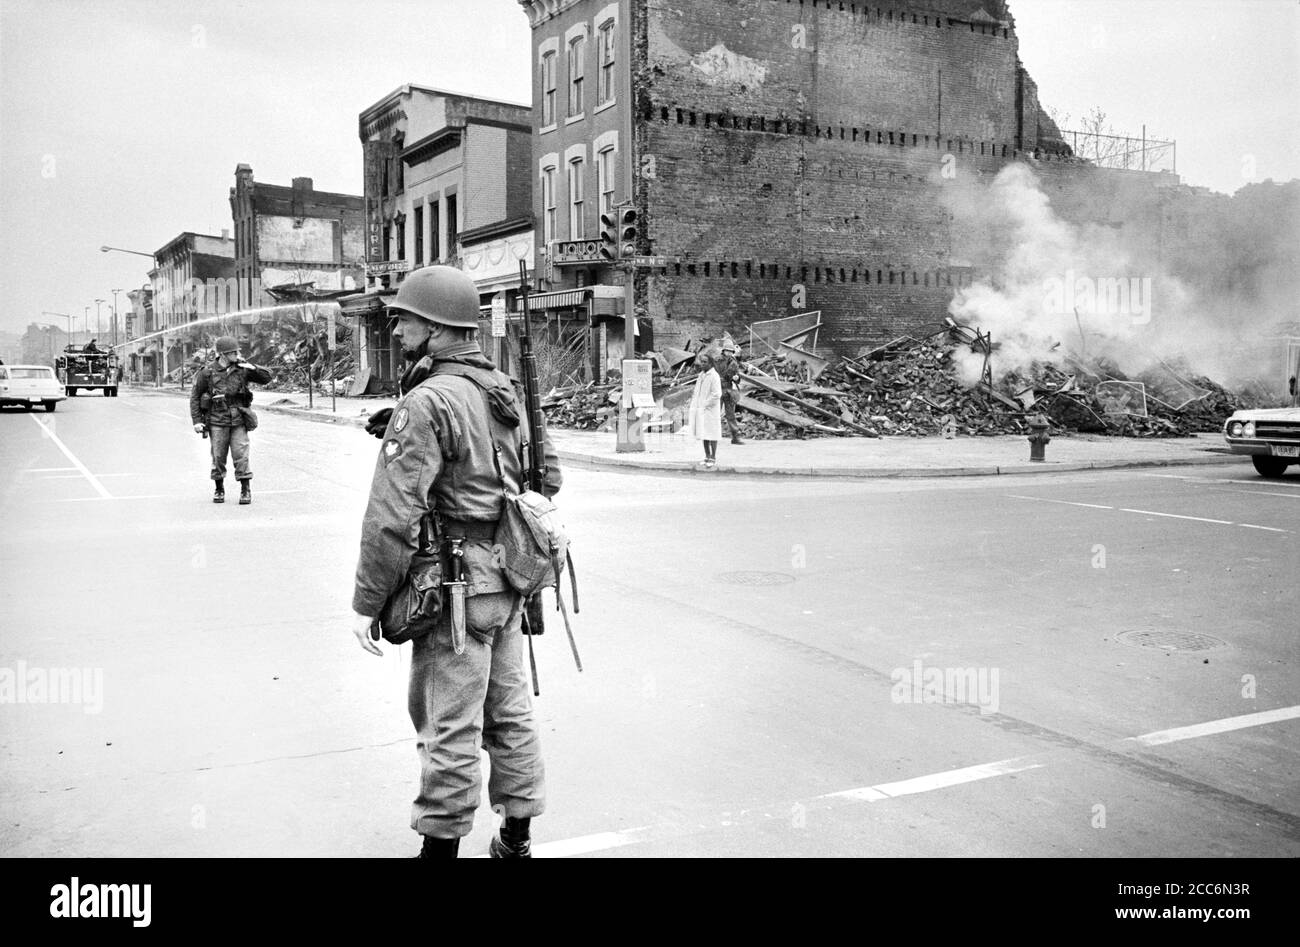 Guardia soldato degli Stati Uniti vicino alle rovine di edifici distrutti da rivolte a seguito del Dr. Martin Luther King Jr, assassinio, 7th and N Street, N.W., Washington, D.C., USA, Warren K. Leffler, 8 aprile 1968 Foto Stock